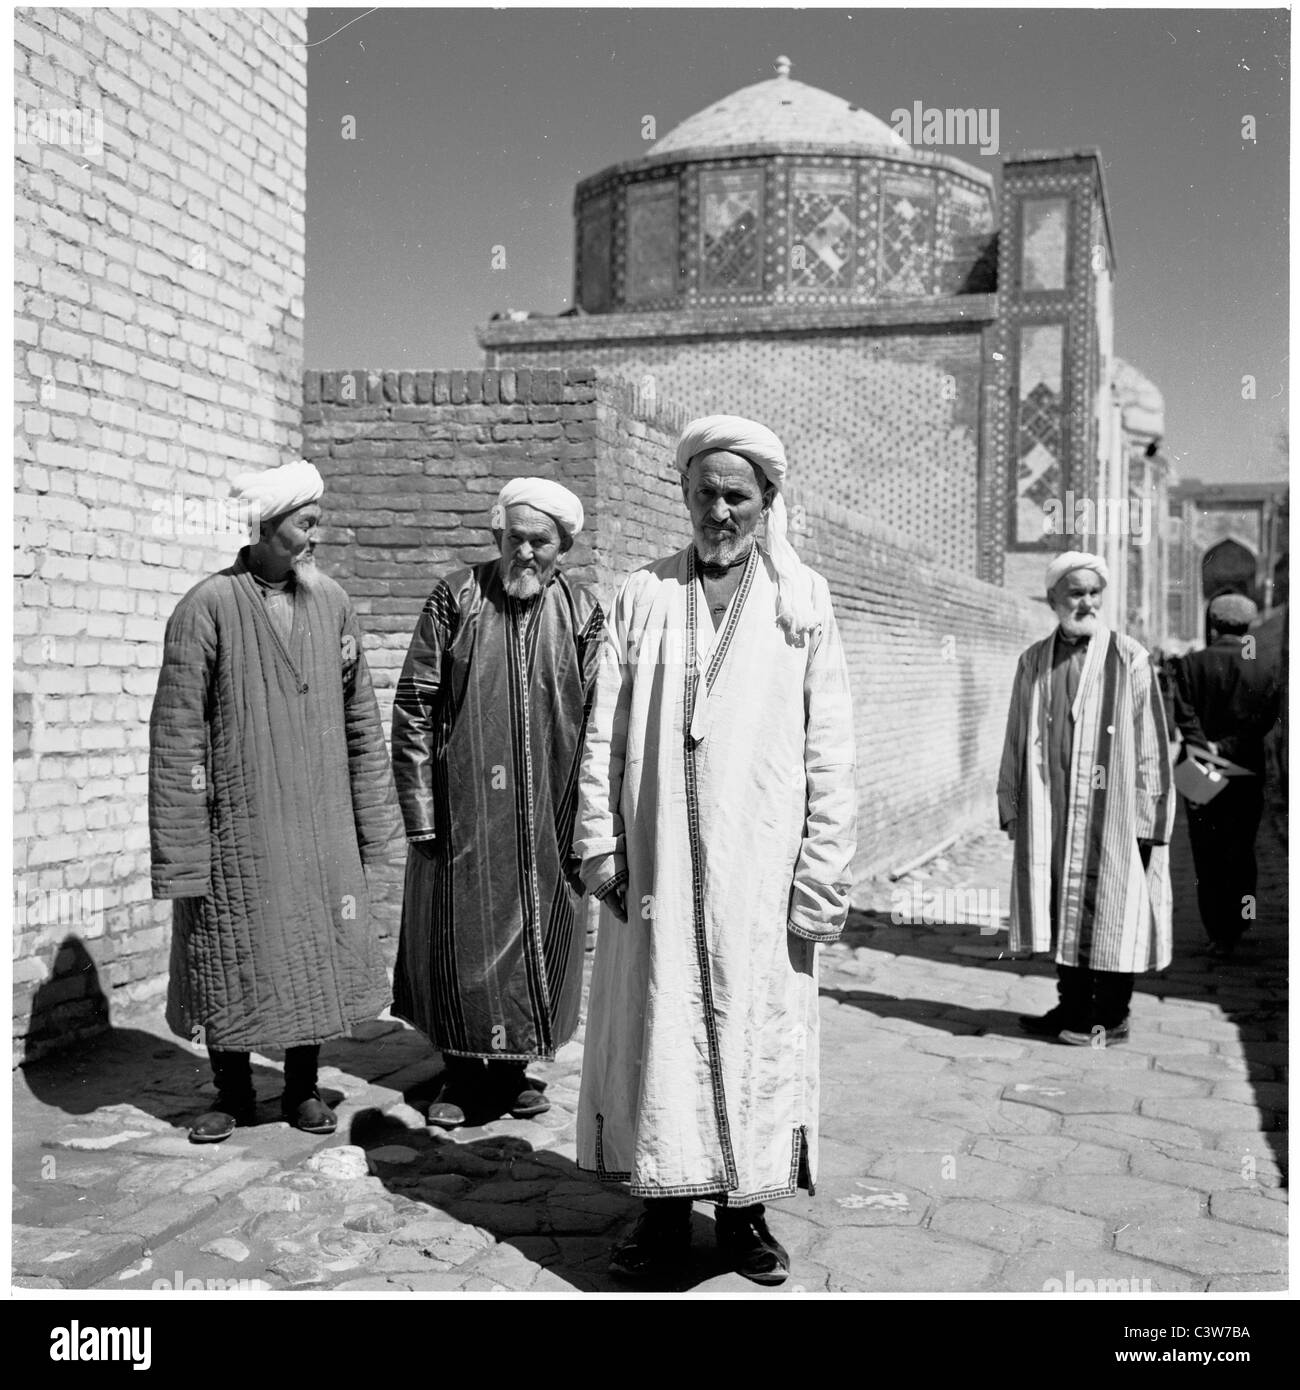 der 1950er Jahre ein Geschichtsbild der drei älteren usbekische Männer in traditionellen langen Gewändern vor den Mauern einer Moschee, Samarkand. Stockfoto